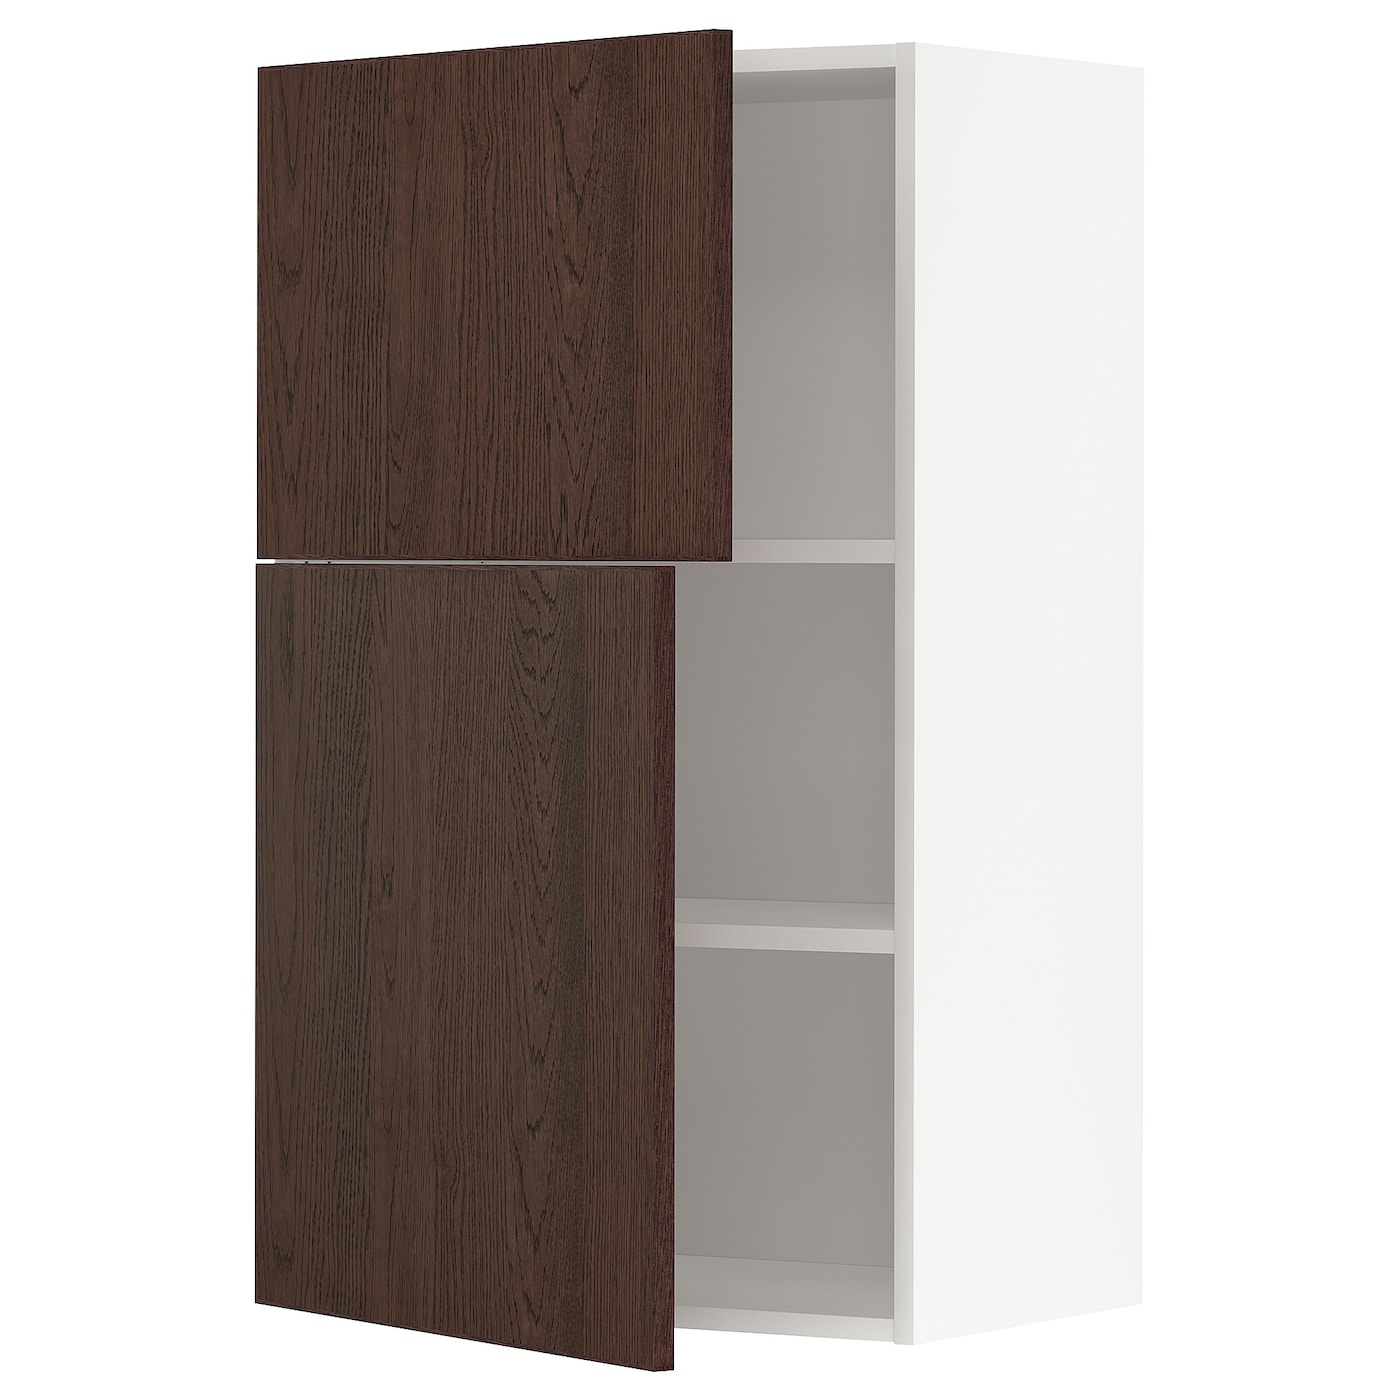 Навесной шкаф с полкой - METOD IKEA/ МЕТОД ИКЕА, 100х60 см, белый/коричневый